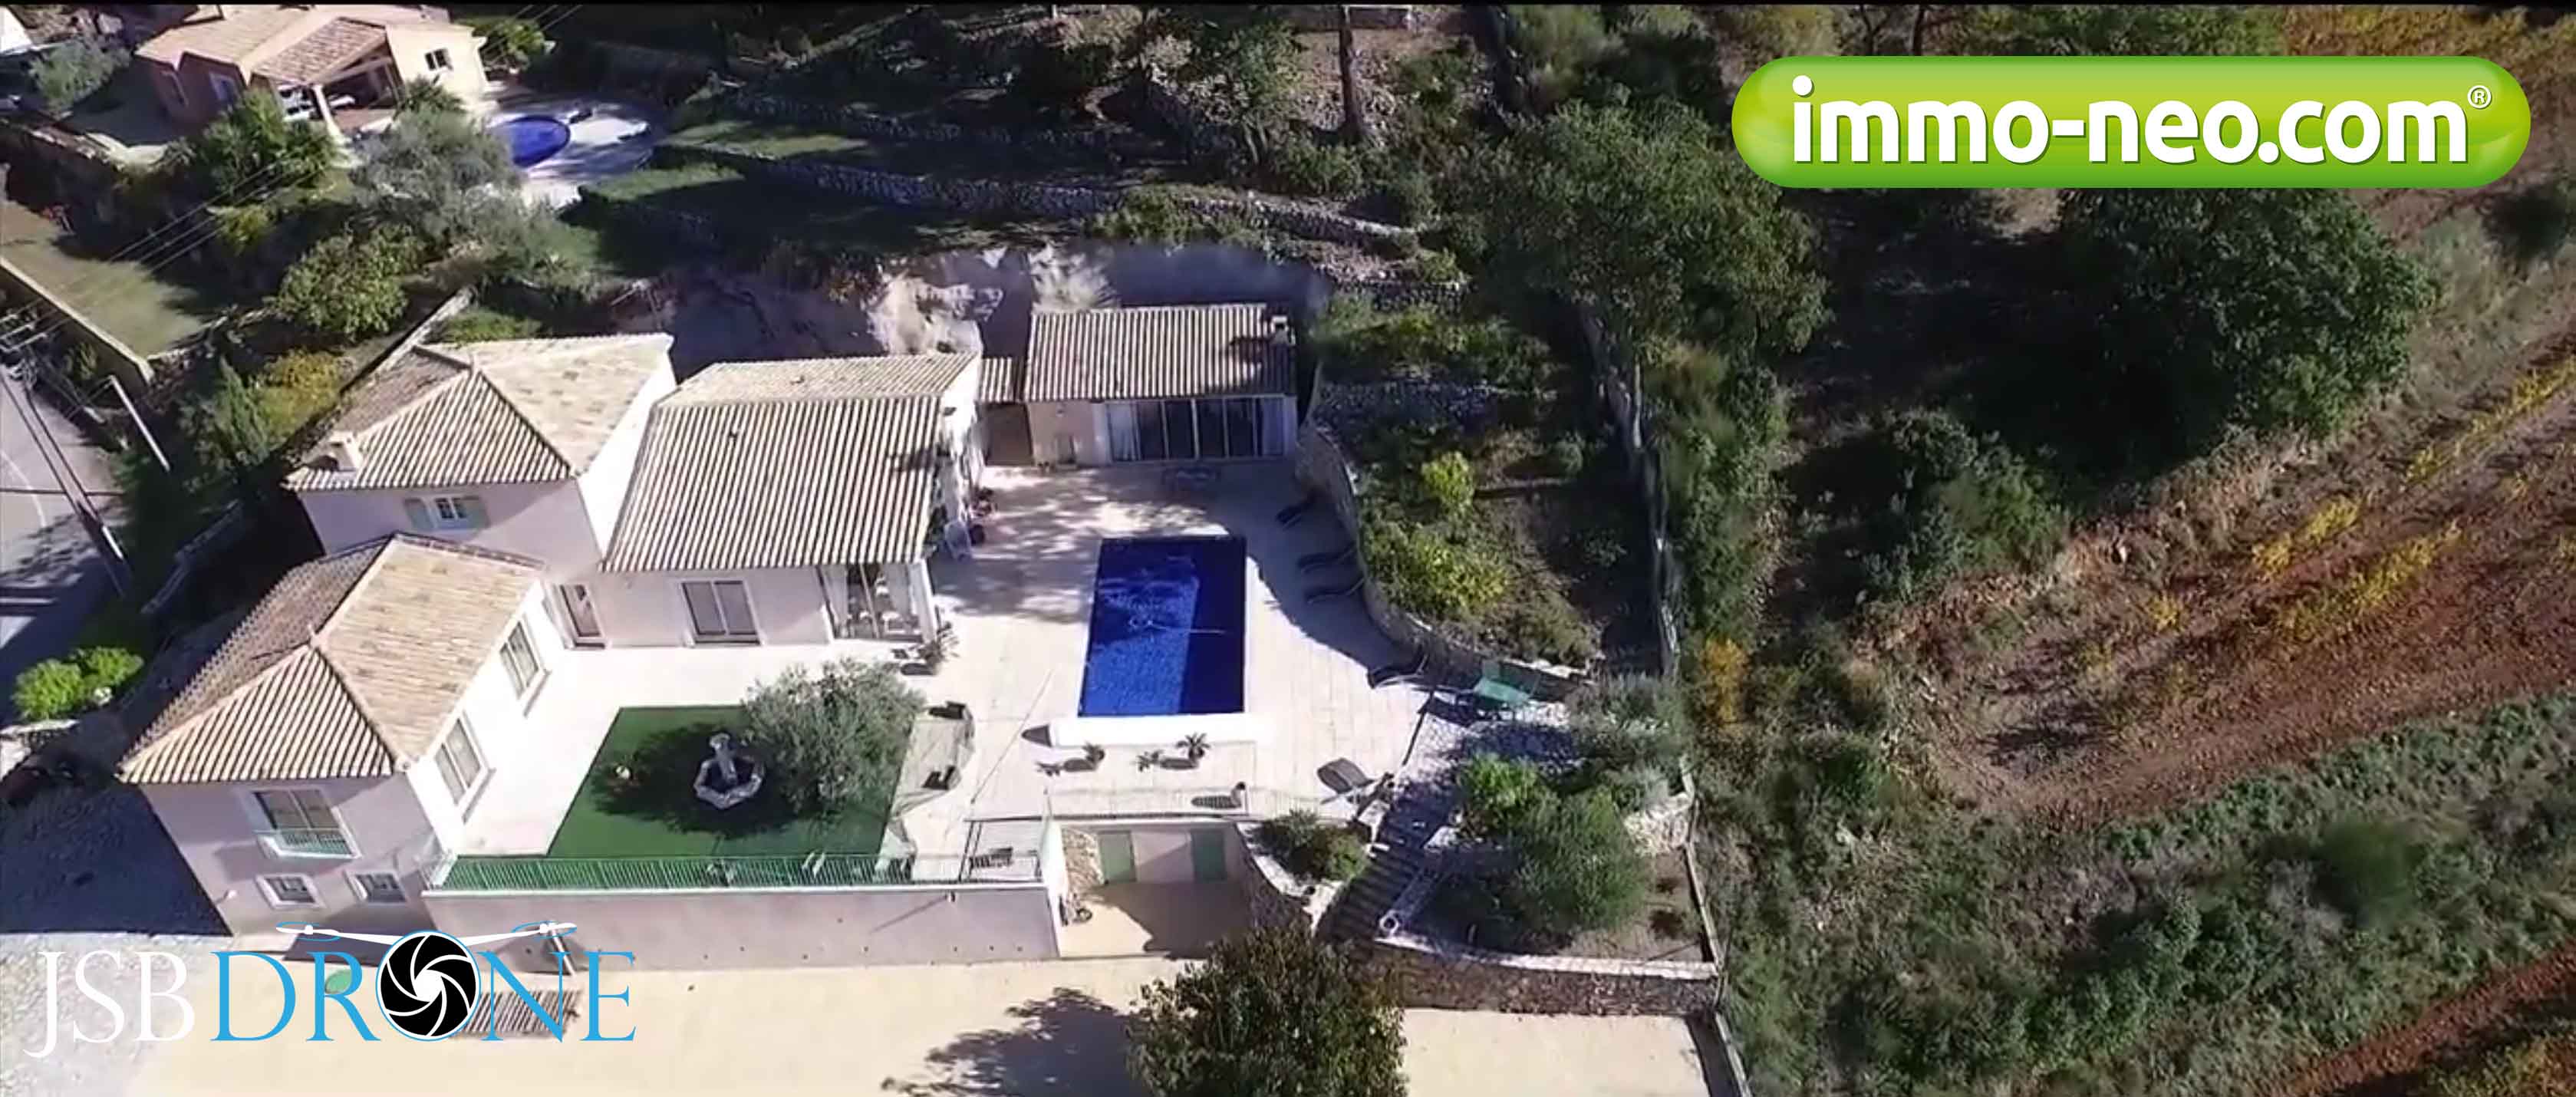 Villa le Beausset jsb-drone